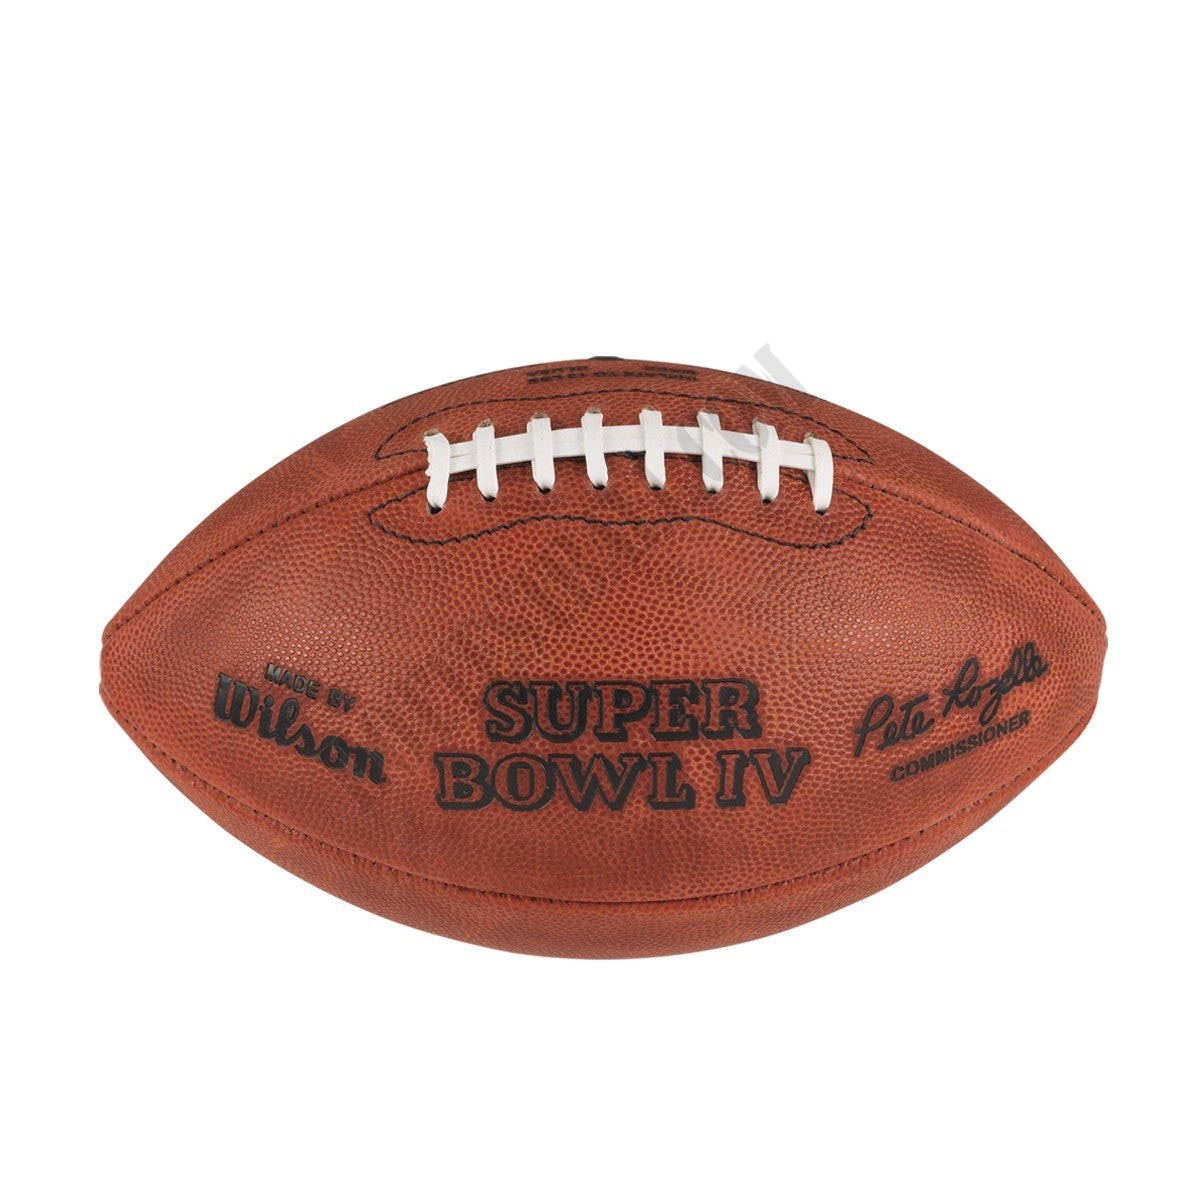 Super Bowl IV Game Football - Kansas City Chiefs ● Wilson Promotions - Super Bowl IV Game Football - Kansas City Chiefs ● Wilson Promotions